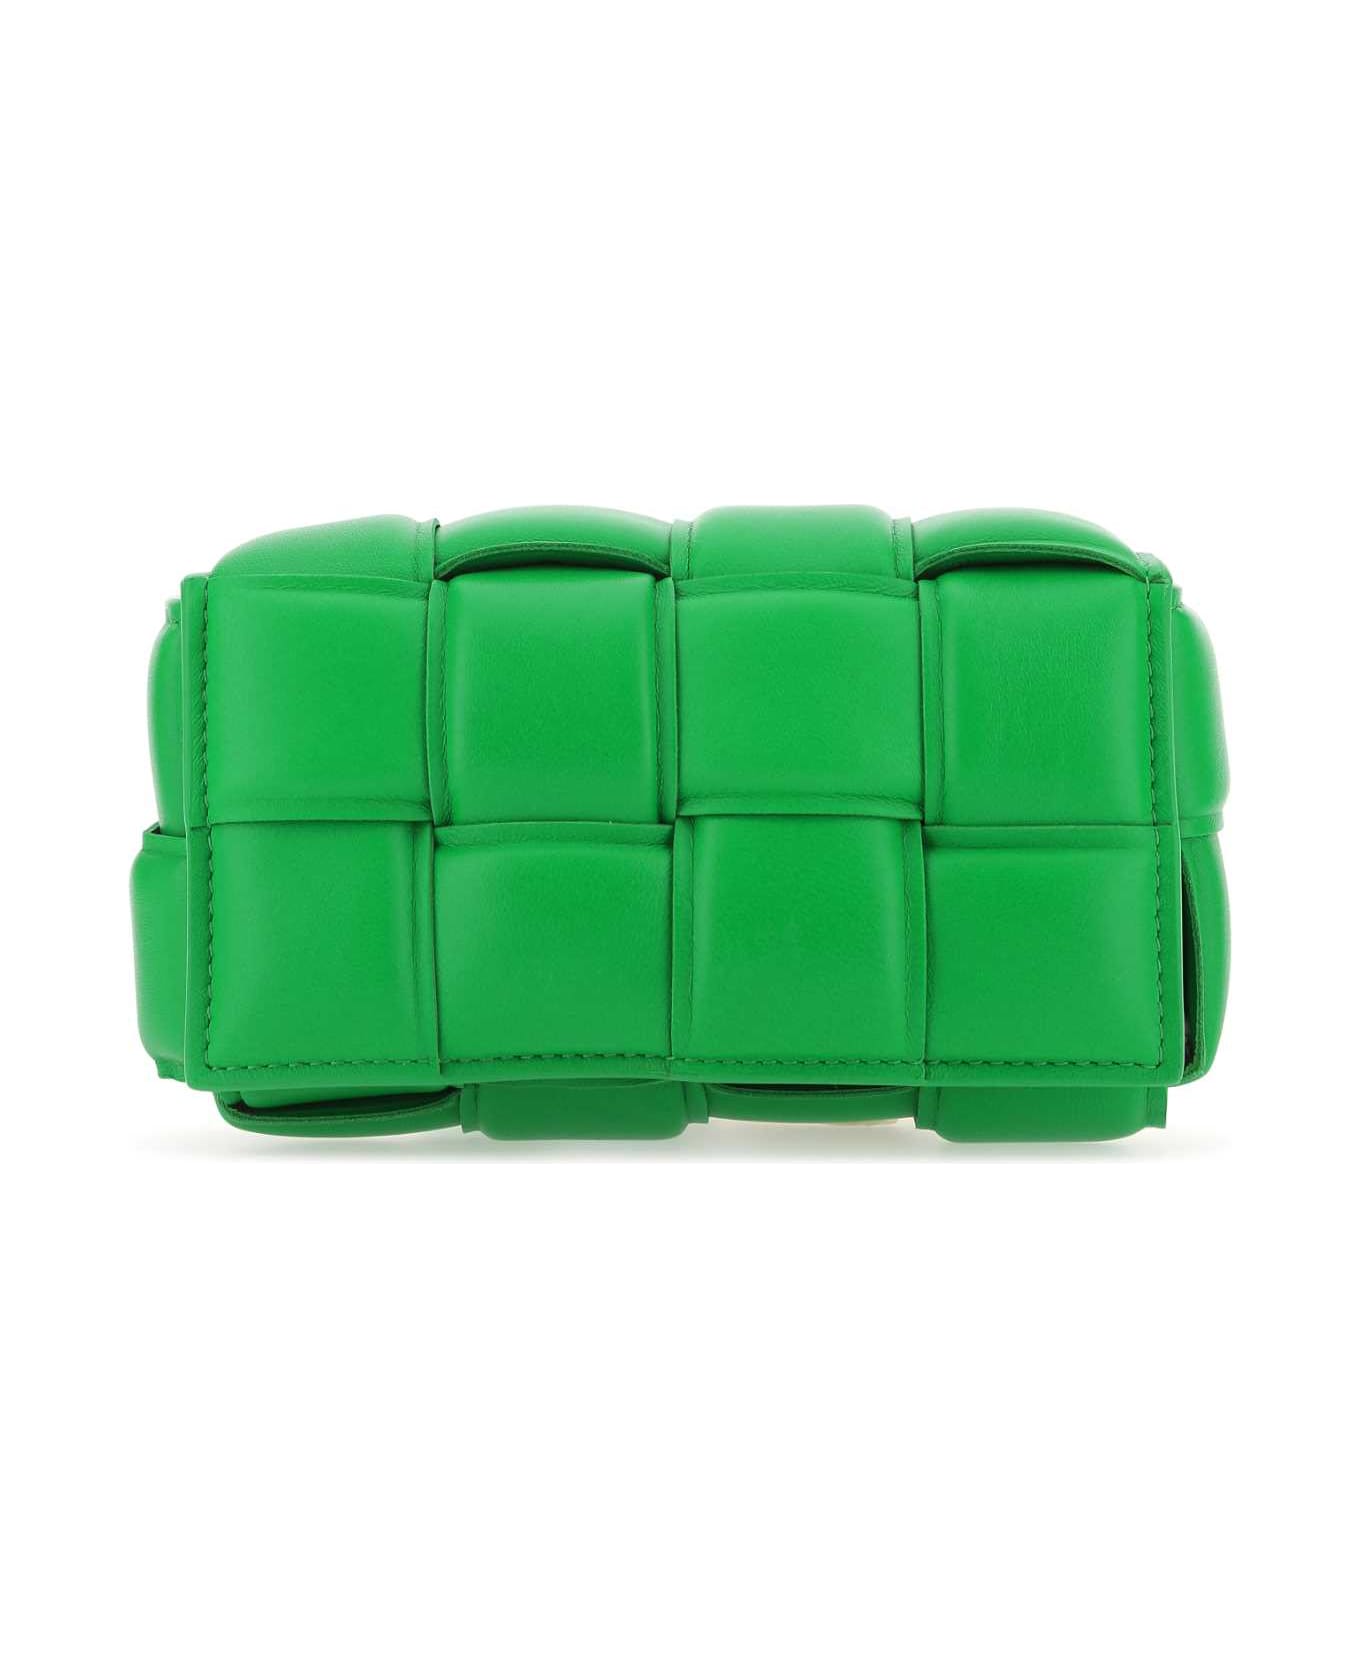 Bottega Veneta Grass Green Nappa Leather Padded Cassette Belt Bag - 3724